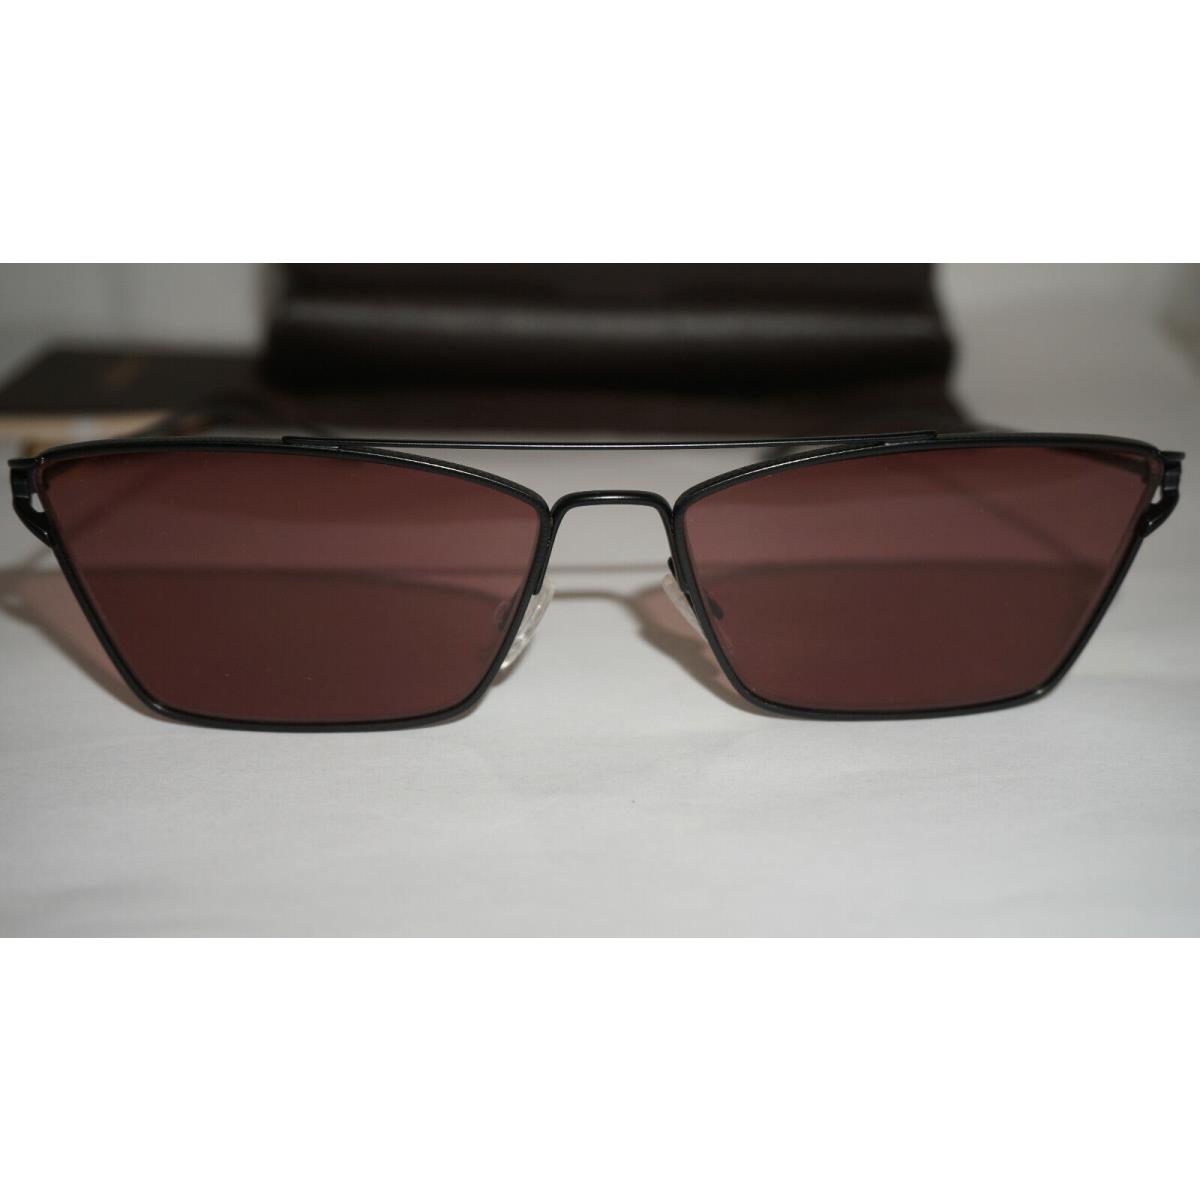 Oliver Peoples sunglasses  - Black Frame, Red Lens 1